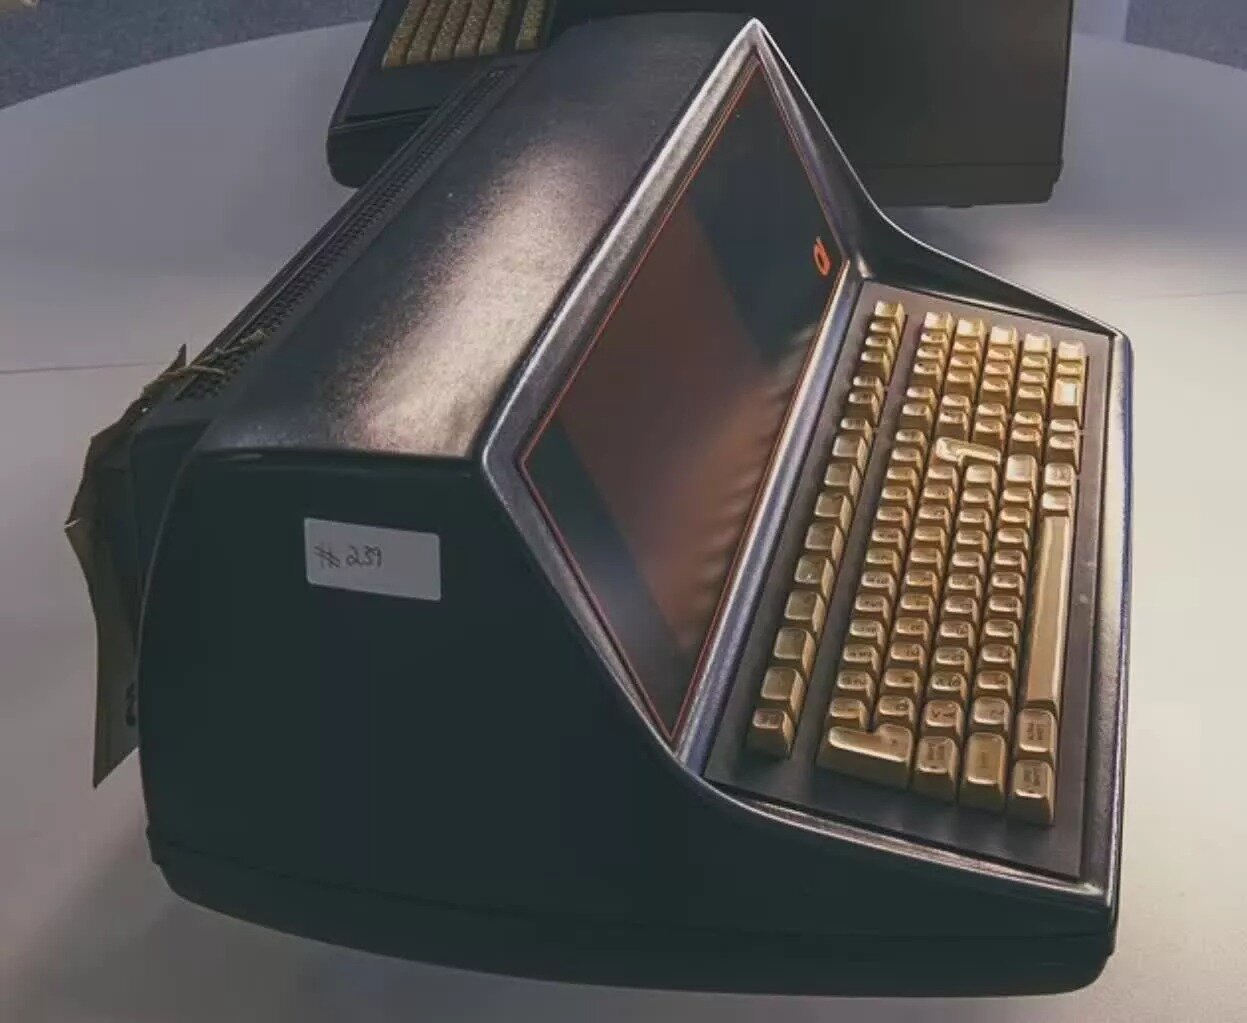 Δύο από τους πρώτους επιτραπέζιους υπολογιστές στον κόσμο ανακαλύφθηκαν στη διάρκεια καθαρισμού σπιτιού